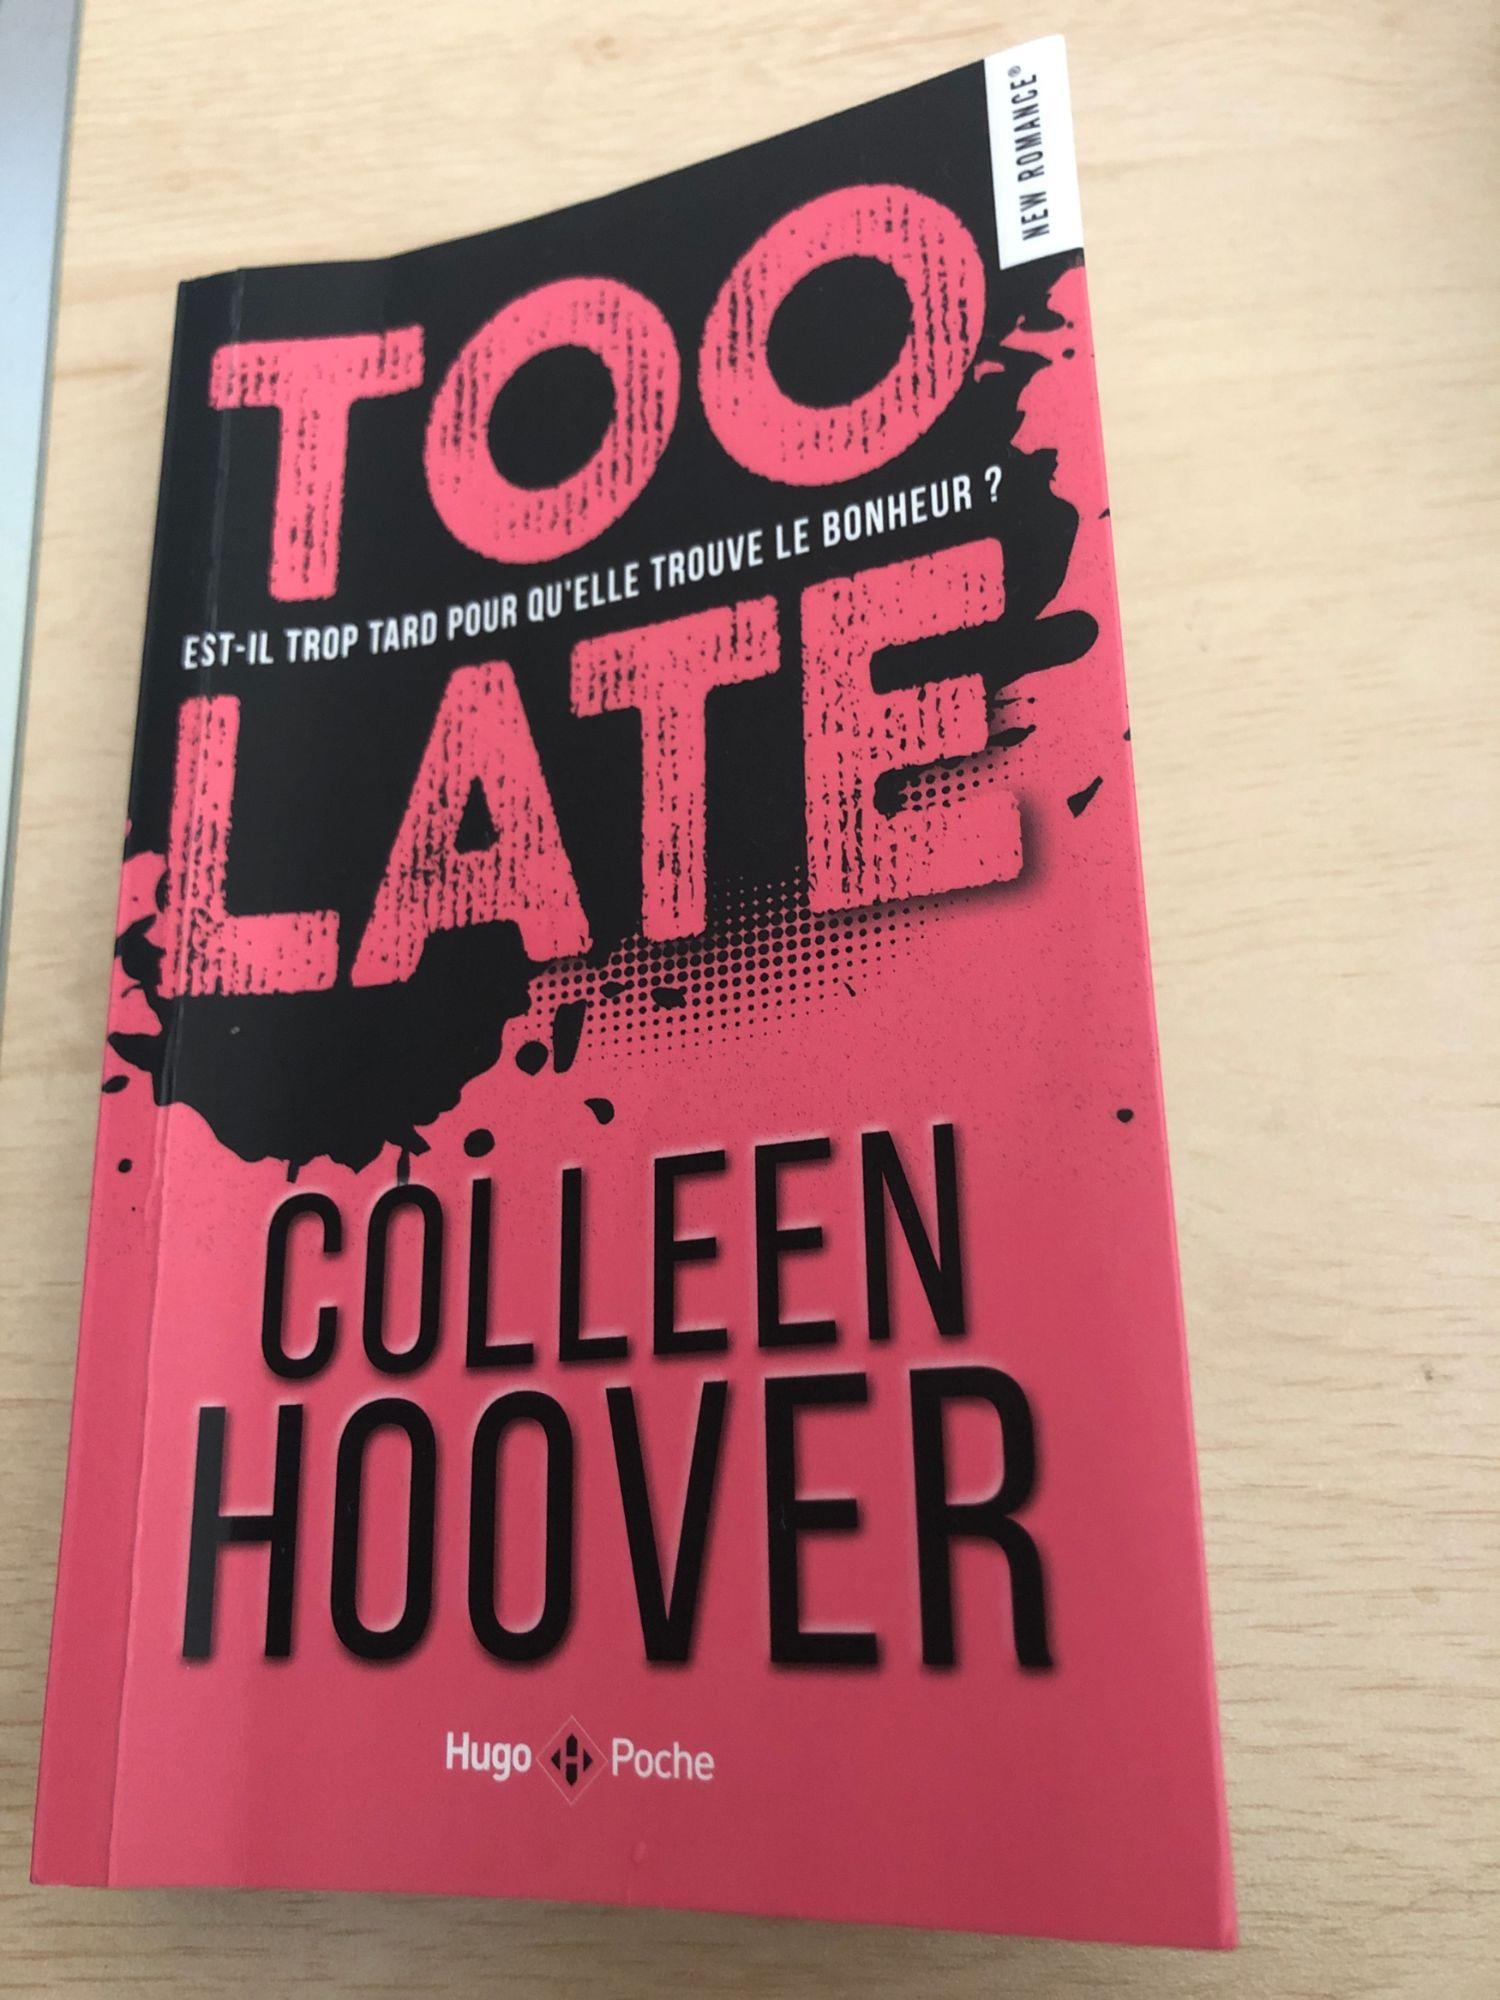 Too late (Français) Poche – de Colleen Hoover